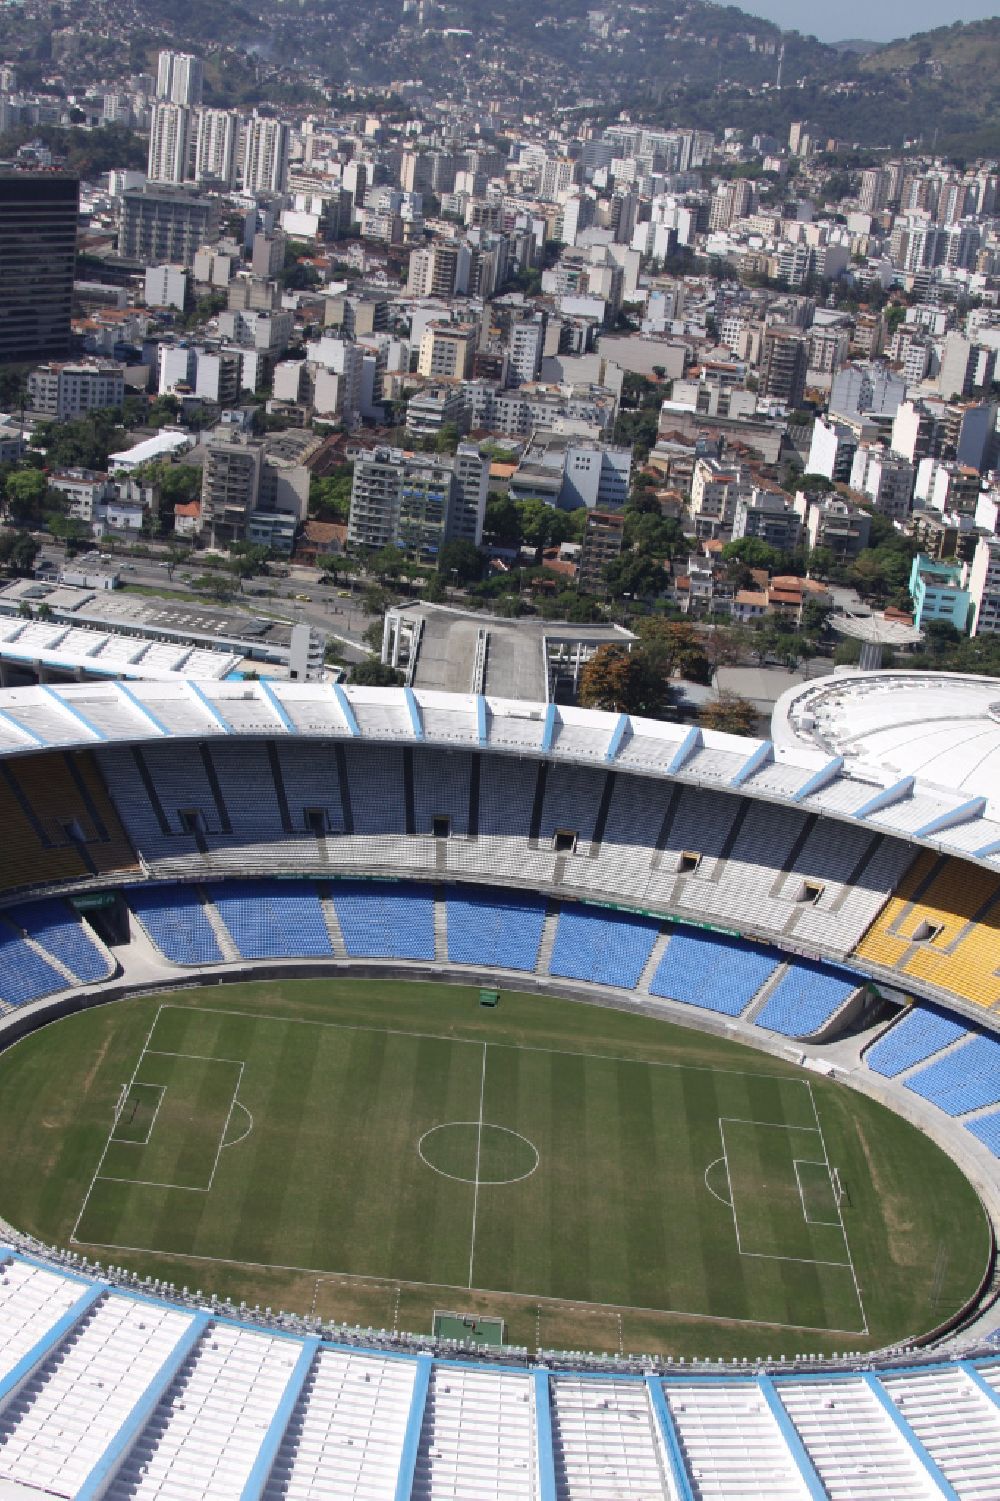 Rio de Janeiro aus der Vogelperspektive: Fussball- und Mehrzweckhalle Stadion Estadio do Maracana vor dem Umbau anlässlich des FIFA World Cup 2014 in Rio de Janeiro in Brasilien 